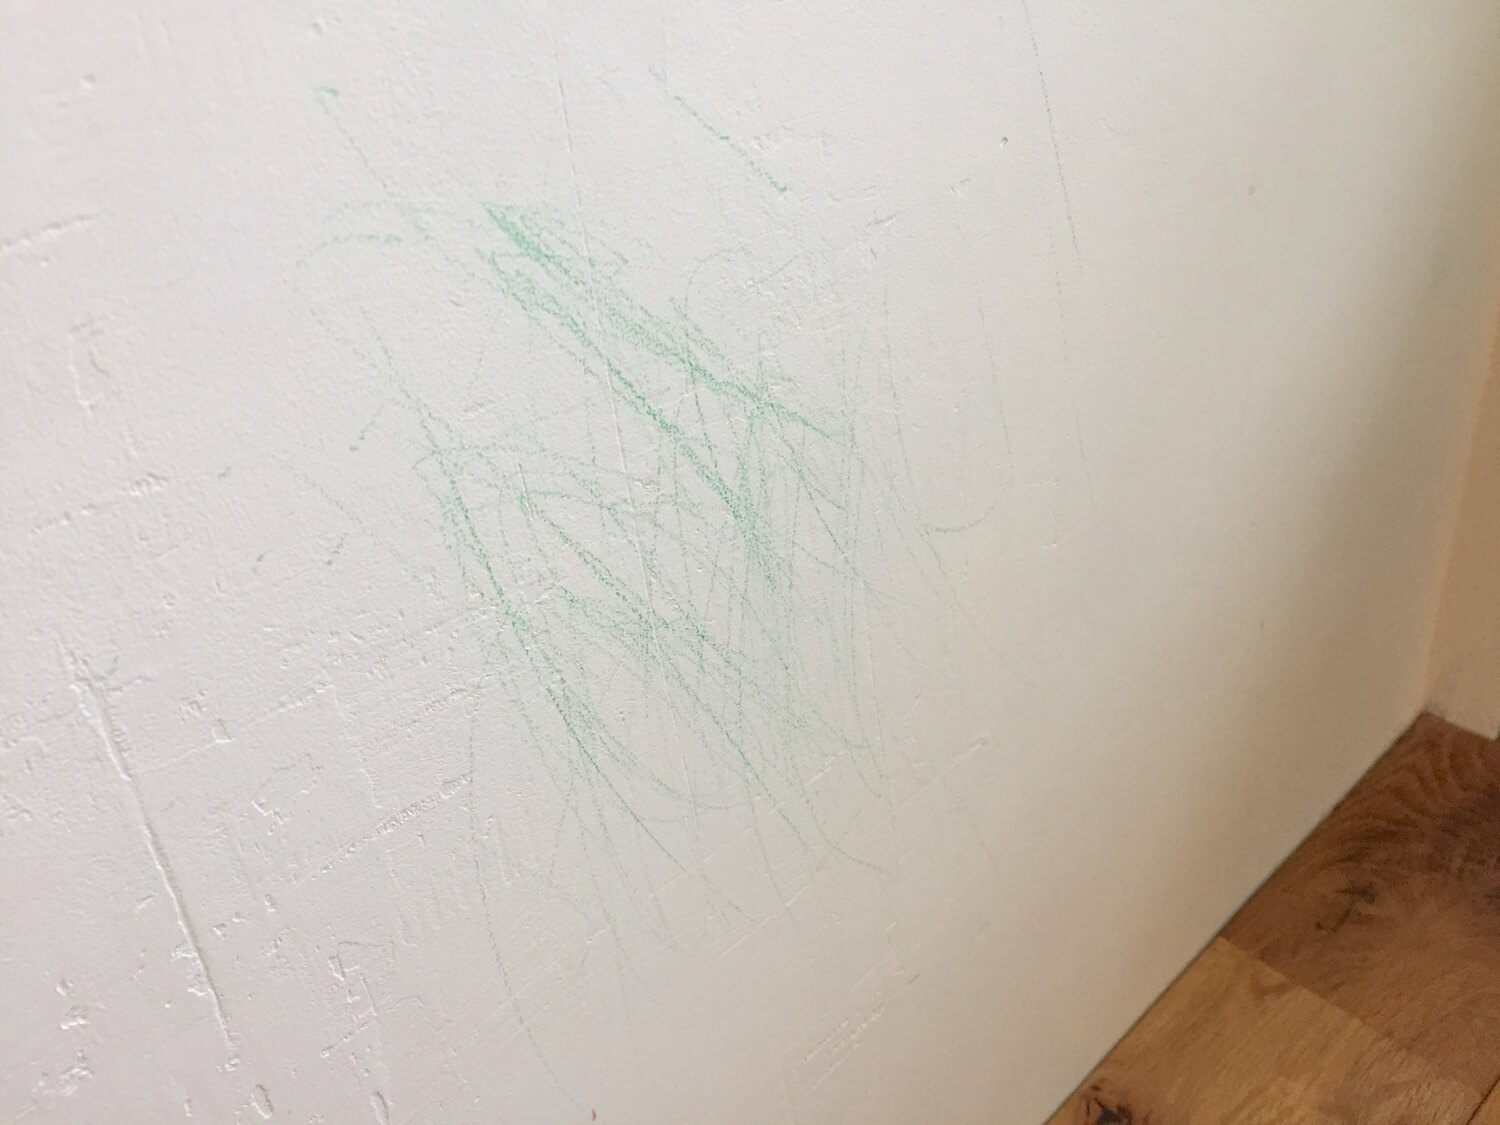 壁が汚れてもペンキ塗装仕上げならdiyで簡単補修 子供がクレヨンで落書きしたので塗り直しました 99 Diy Diyブログ